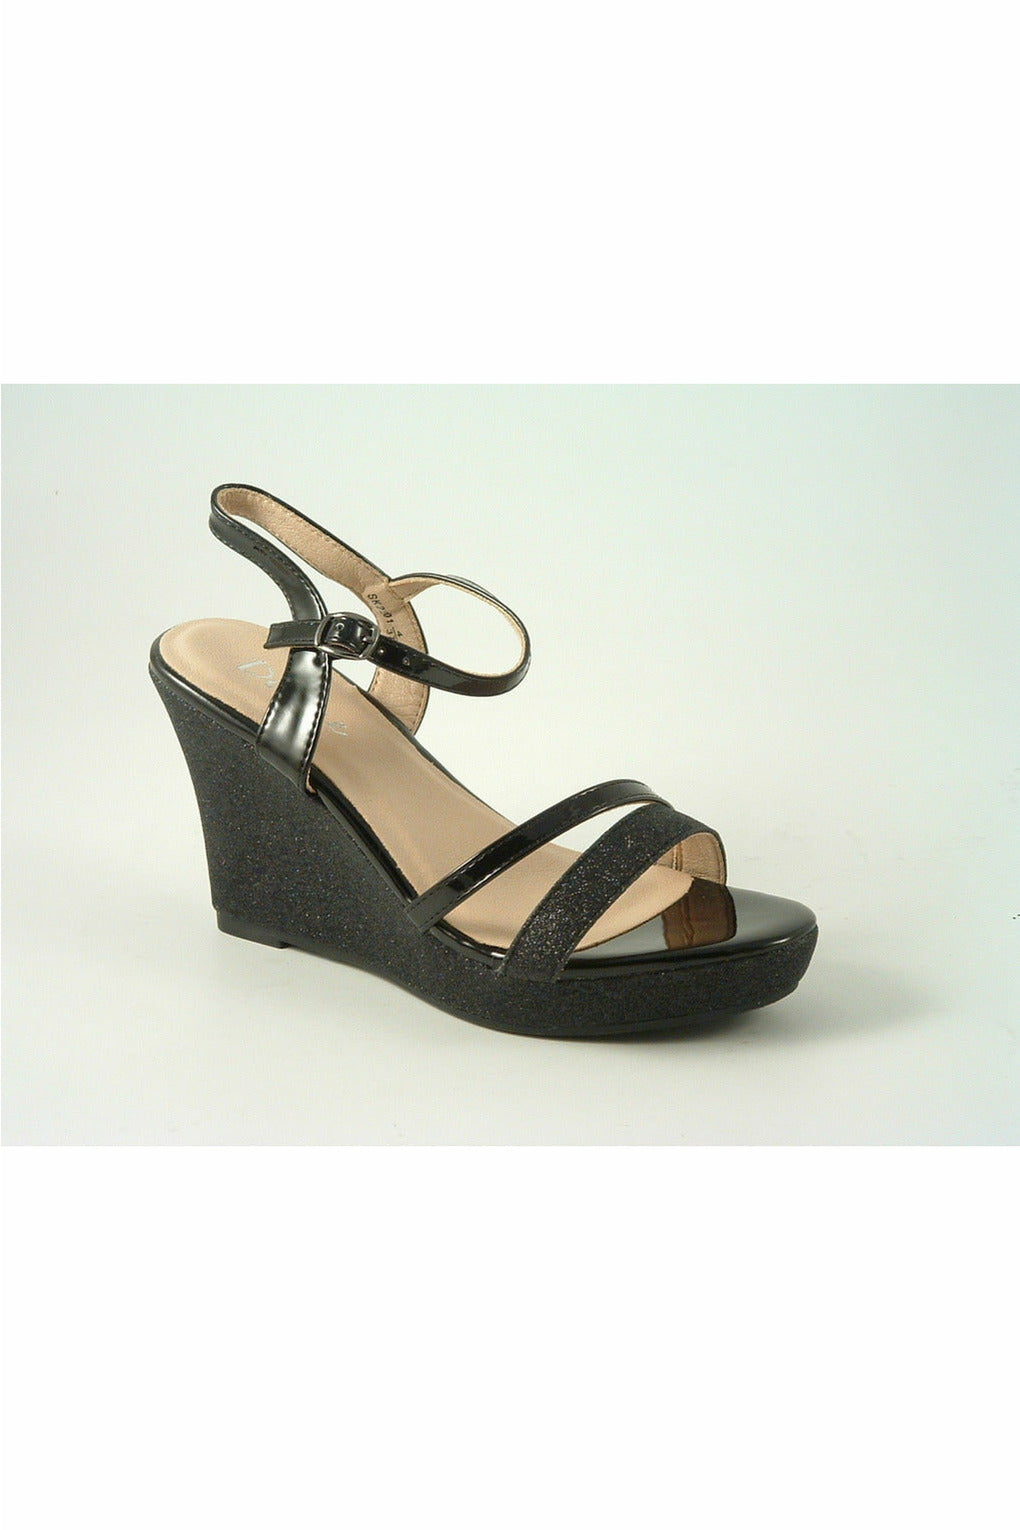 Divine High Heel Glitter Wedge Black Sandal SK2201